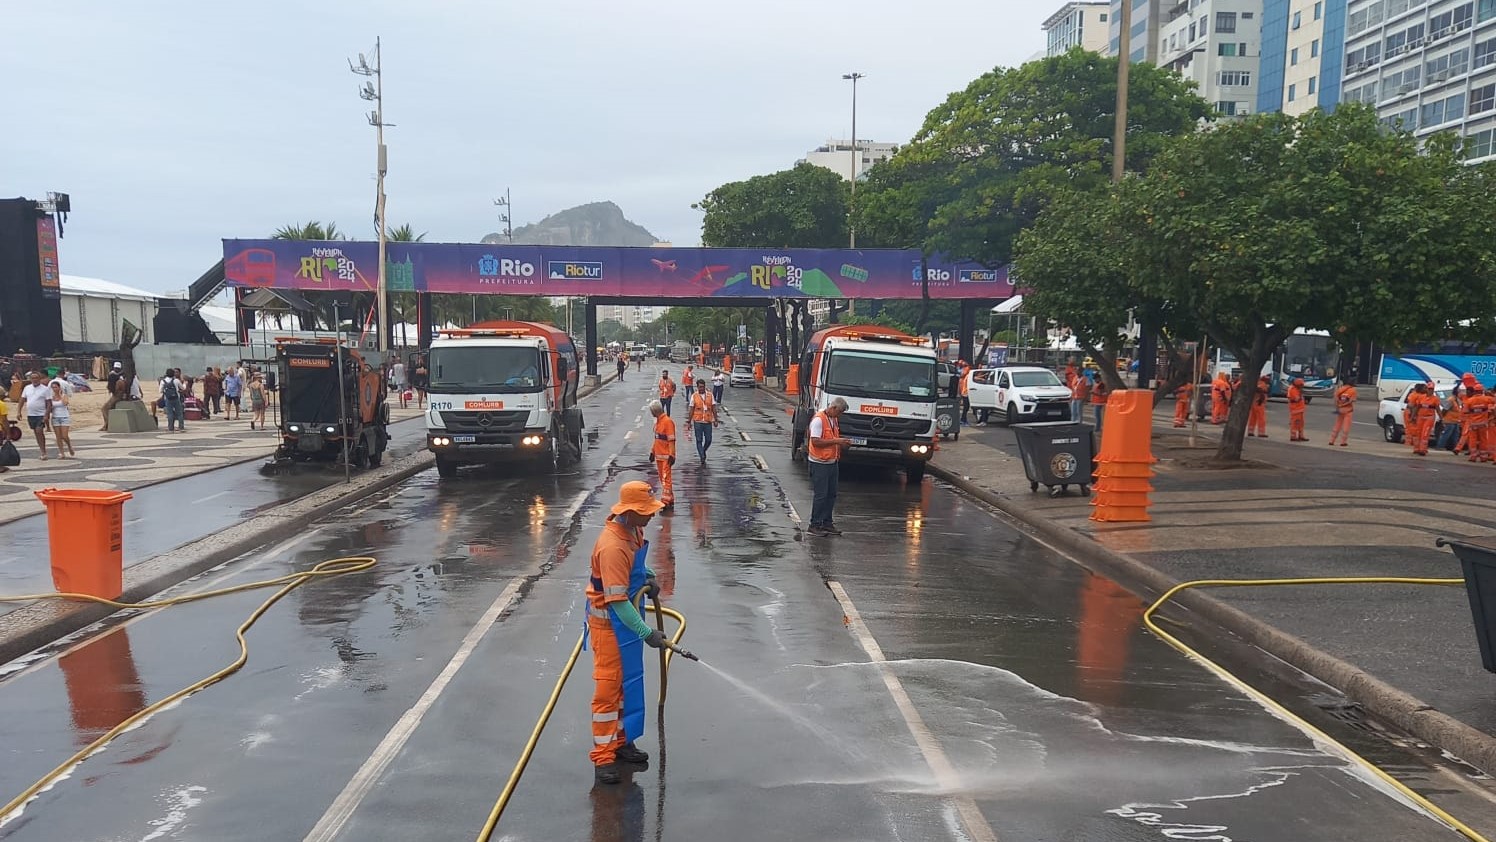 Comlurb realiza operação especial de limpeza para ‘Fan Zone’ em Copacabana durante Jogo do Brasil, nesta terça (02)